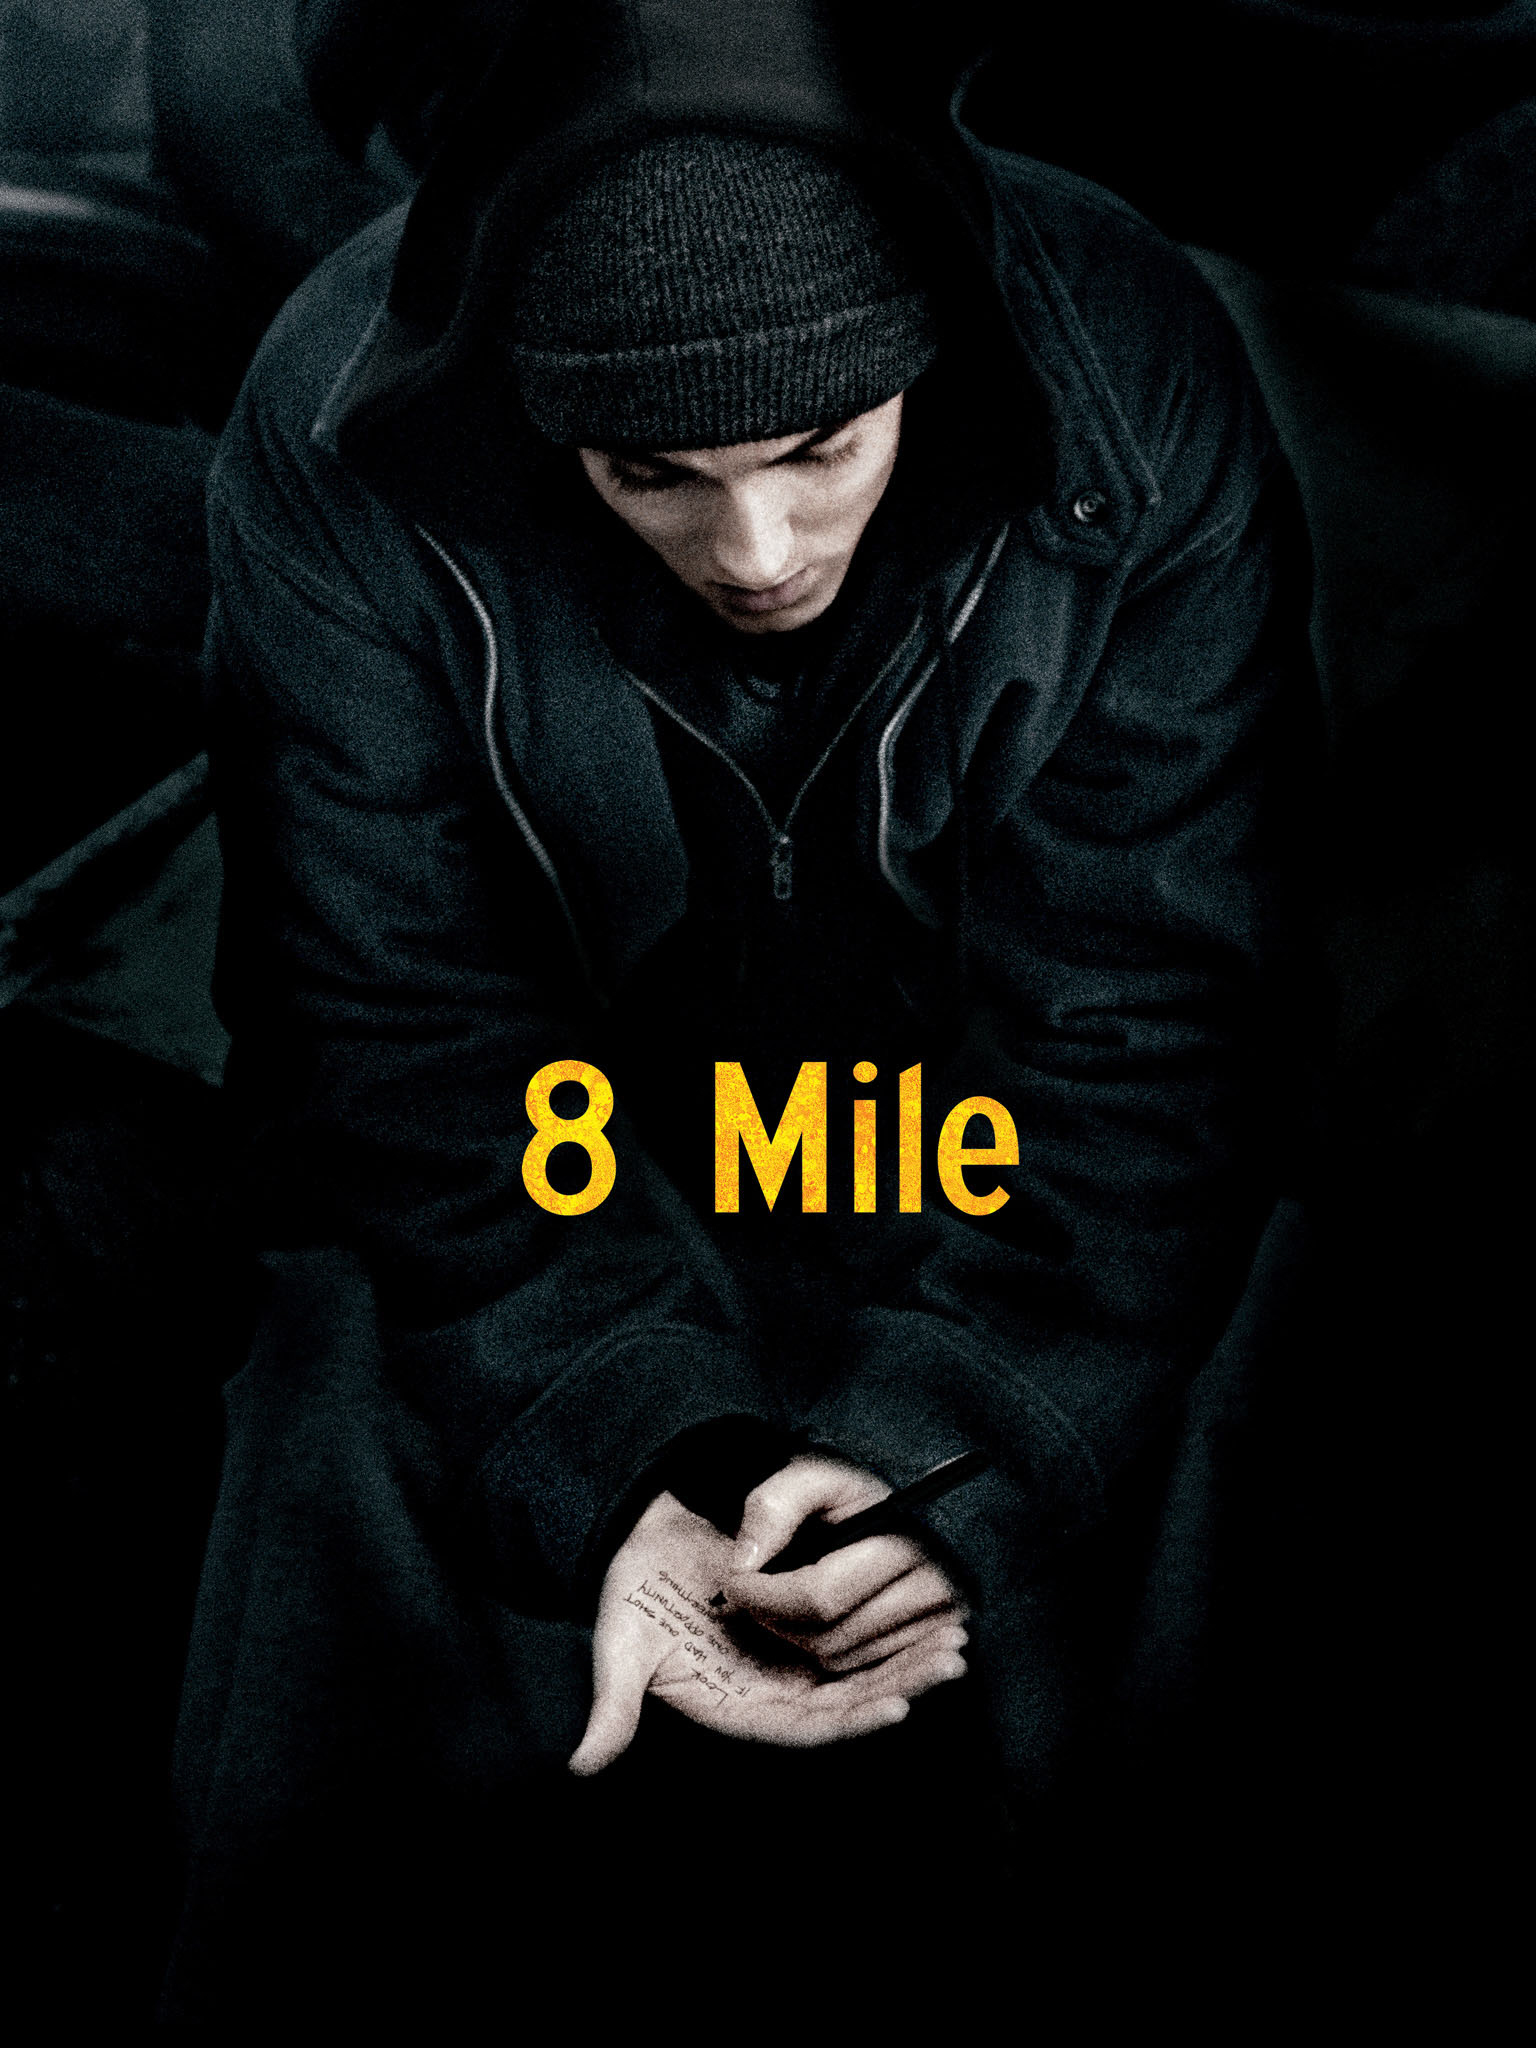 8 mile movie reviews